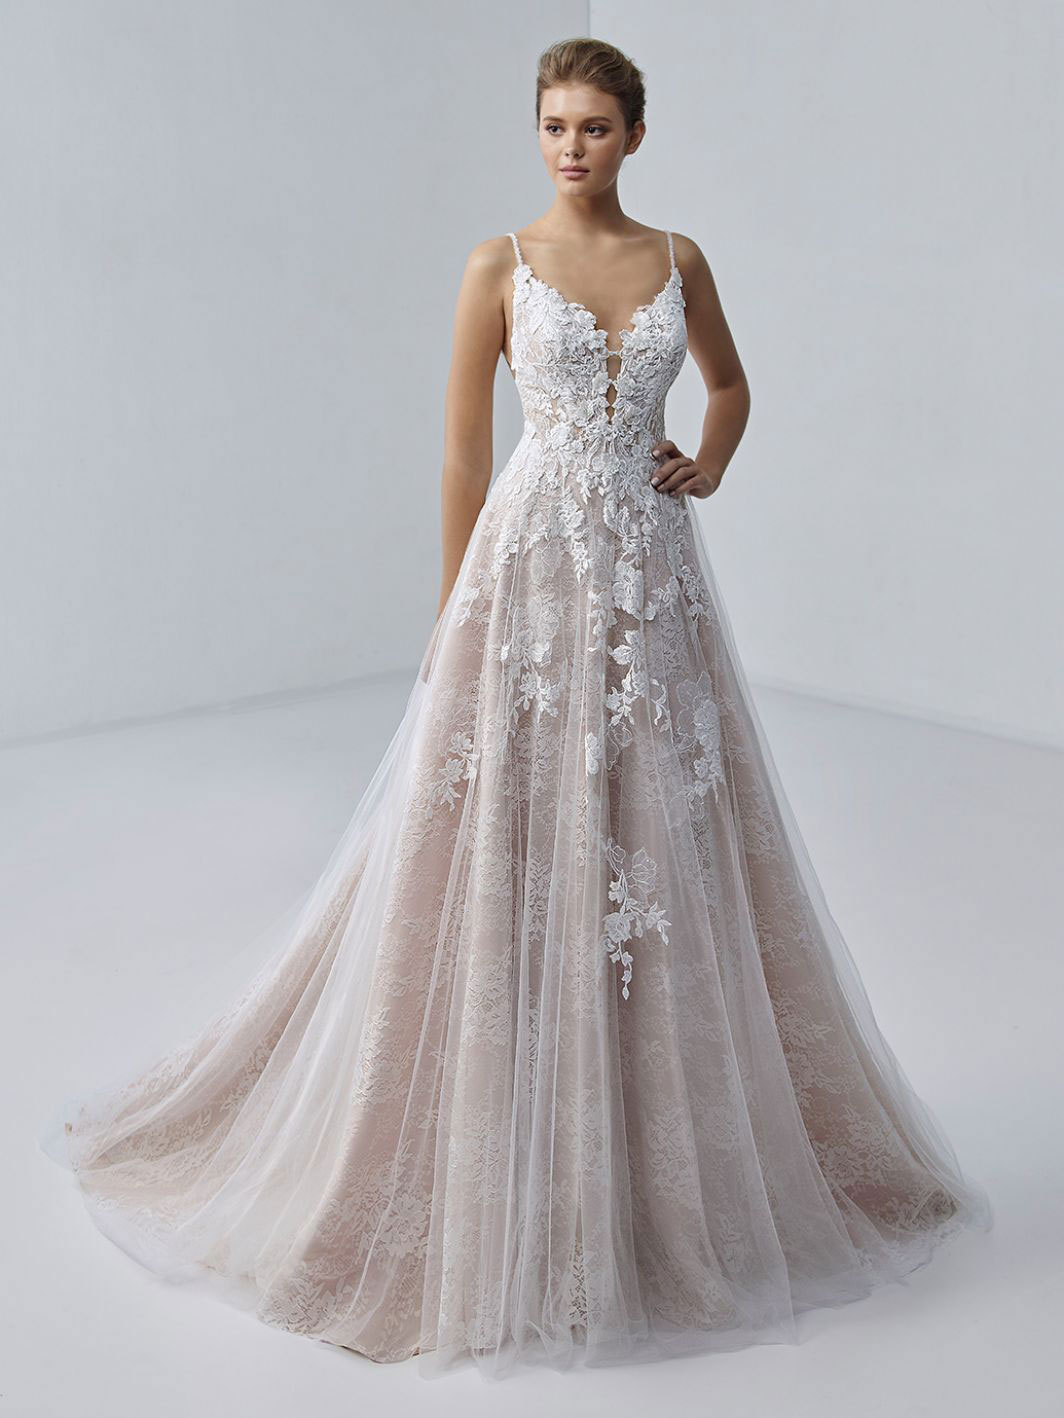 Chloe wedding dress by Elysee